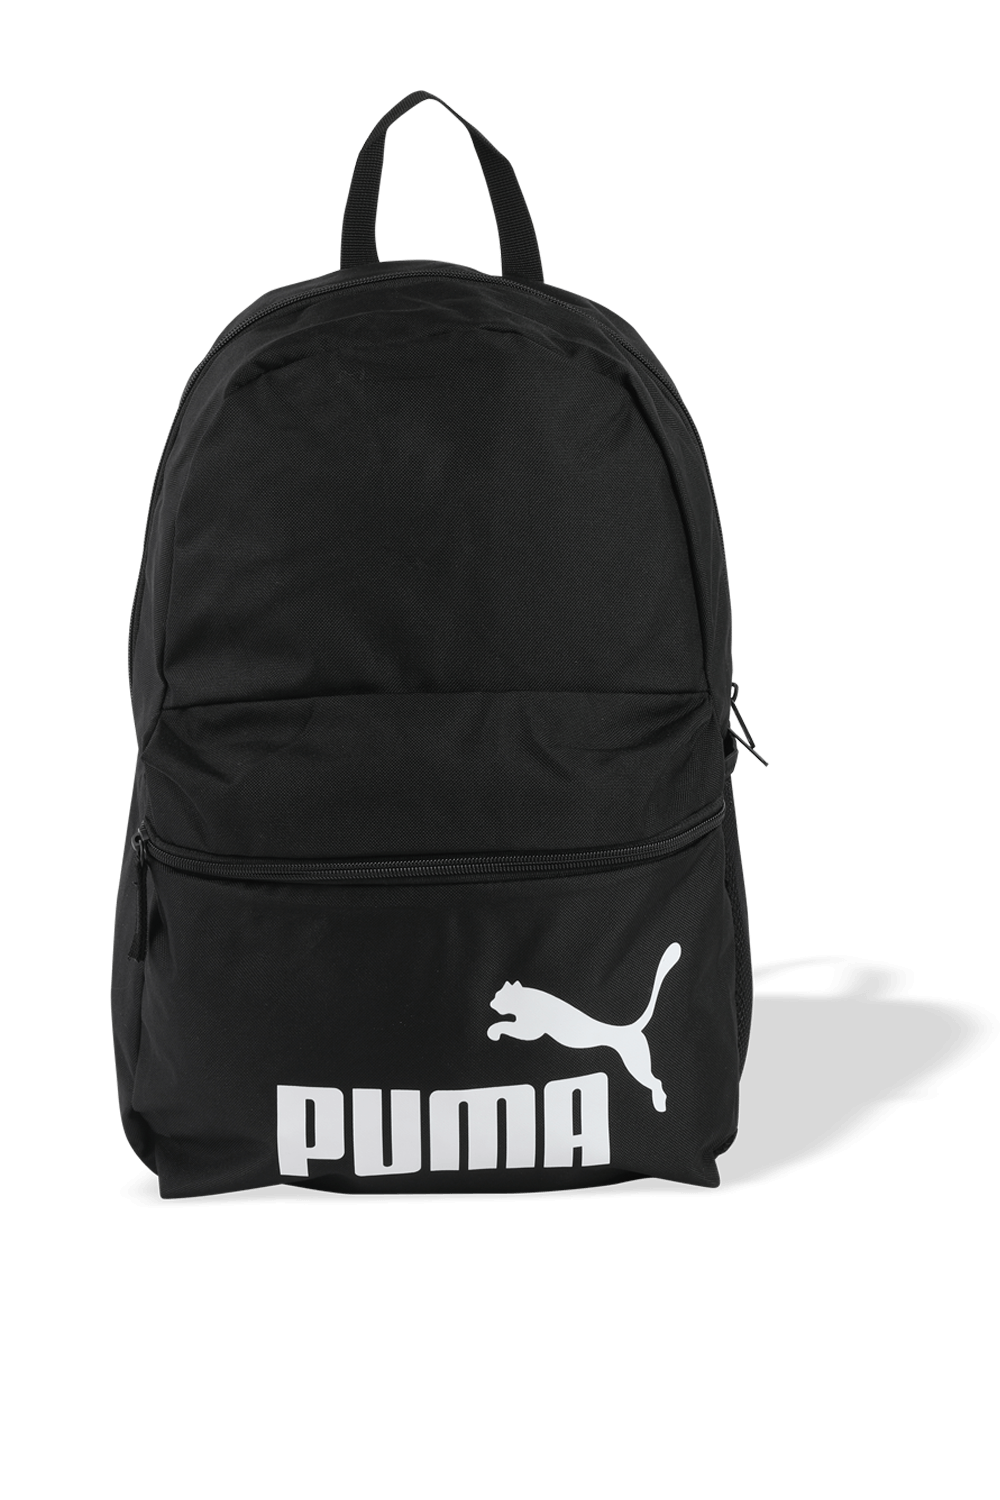 תיק גב ספורטיבי עם לוגו PUMA